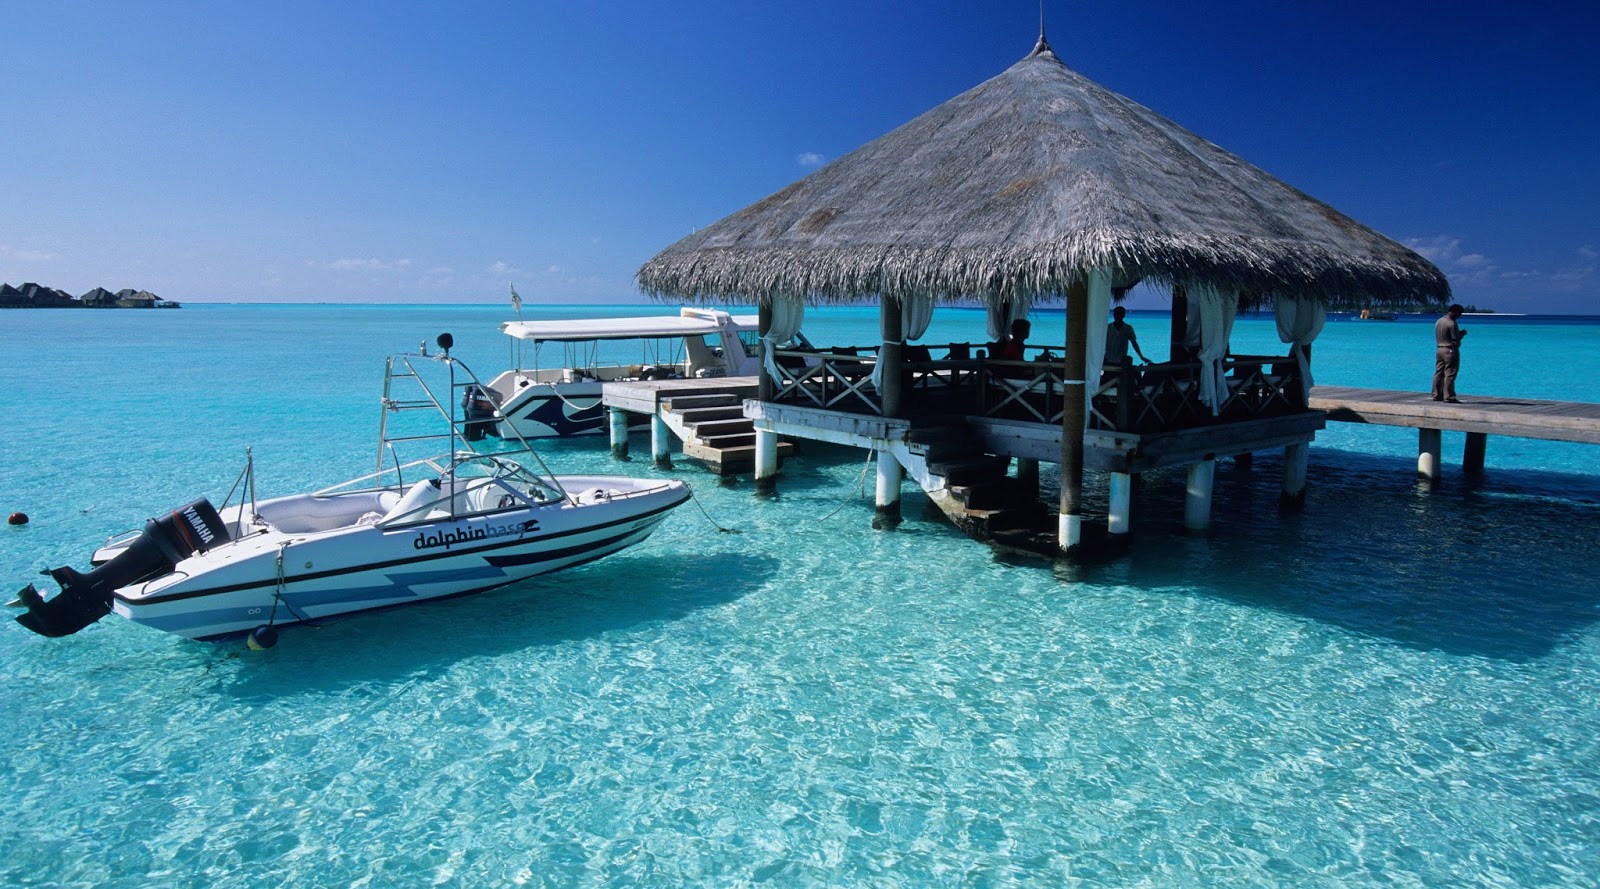 Sitios del mundo: Islas Maldivas